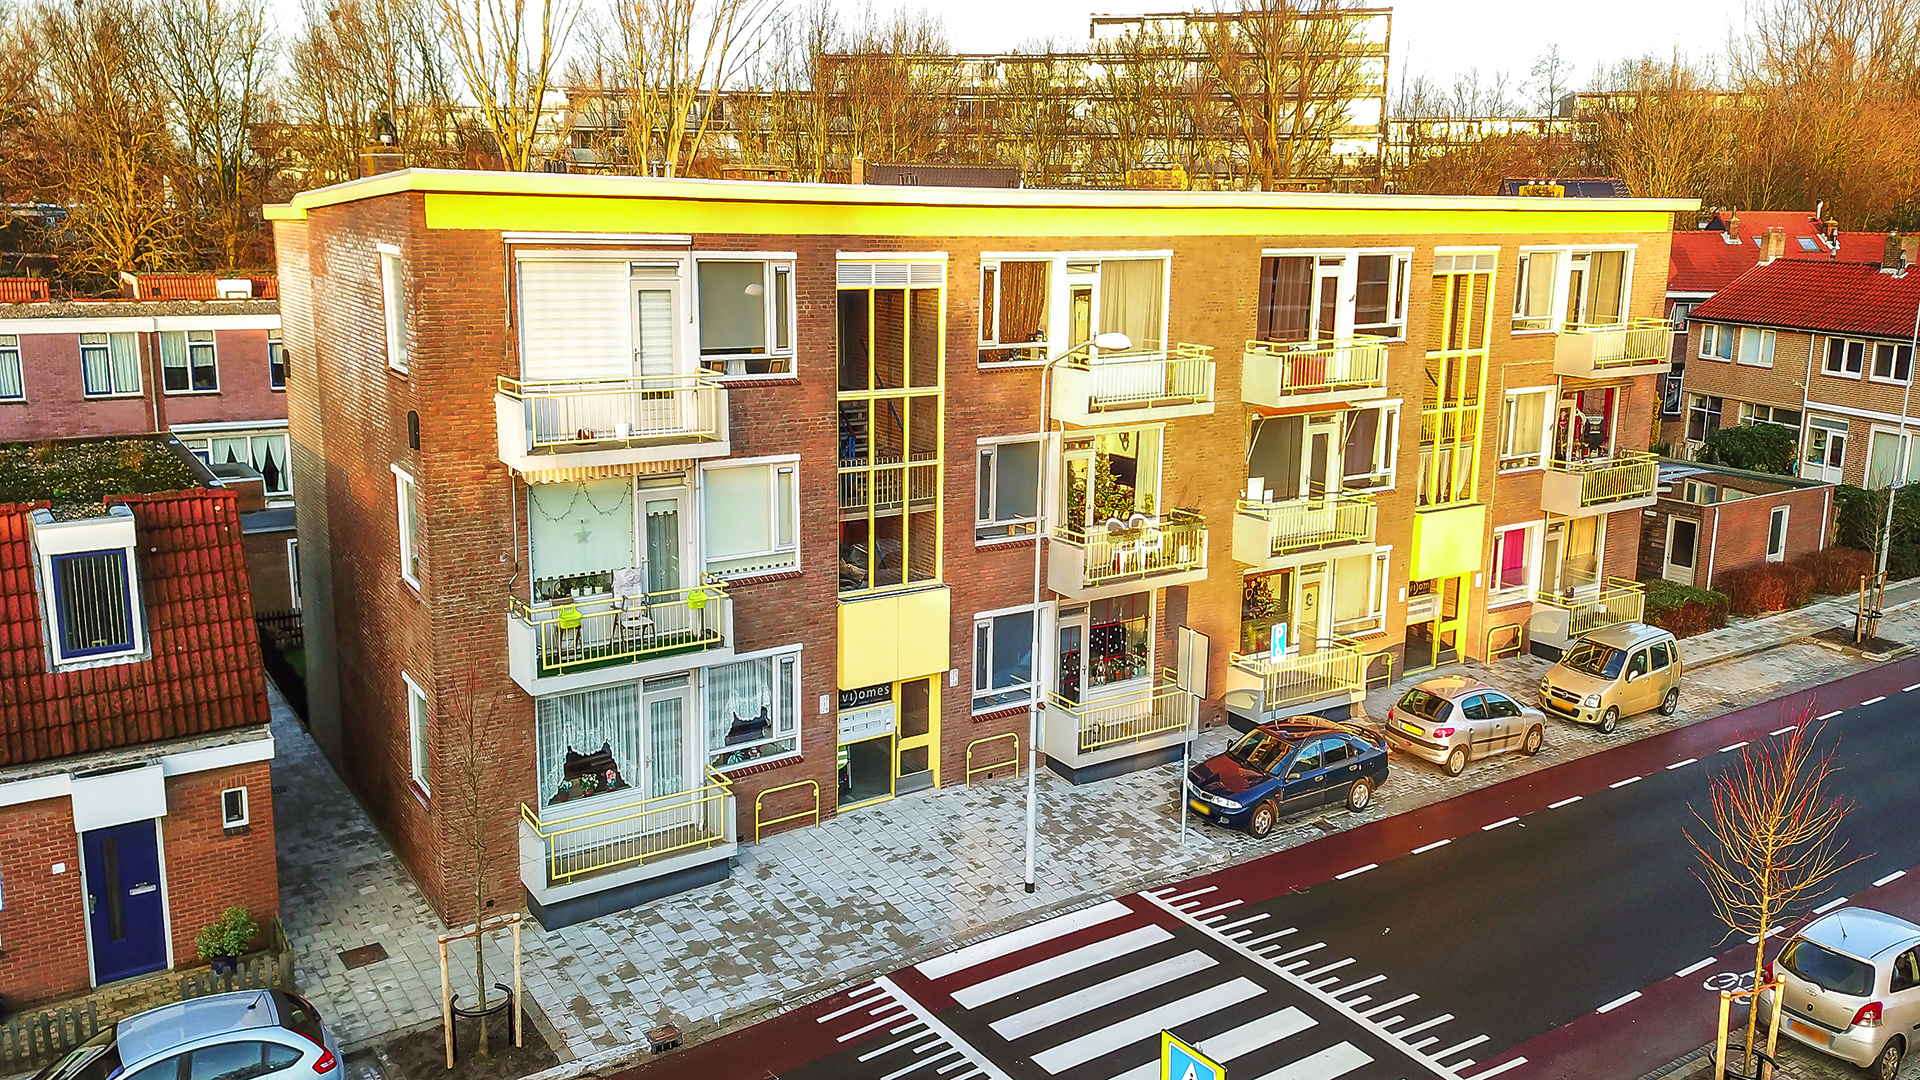 Nieuwstraat 133, 2266 AC Leidschendam, Nederland